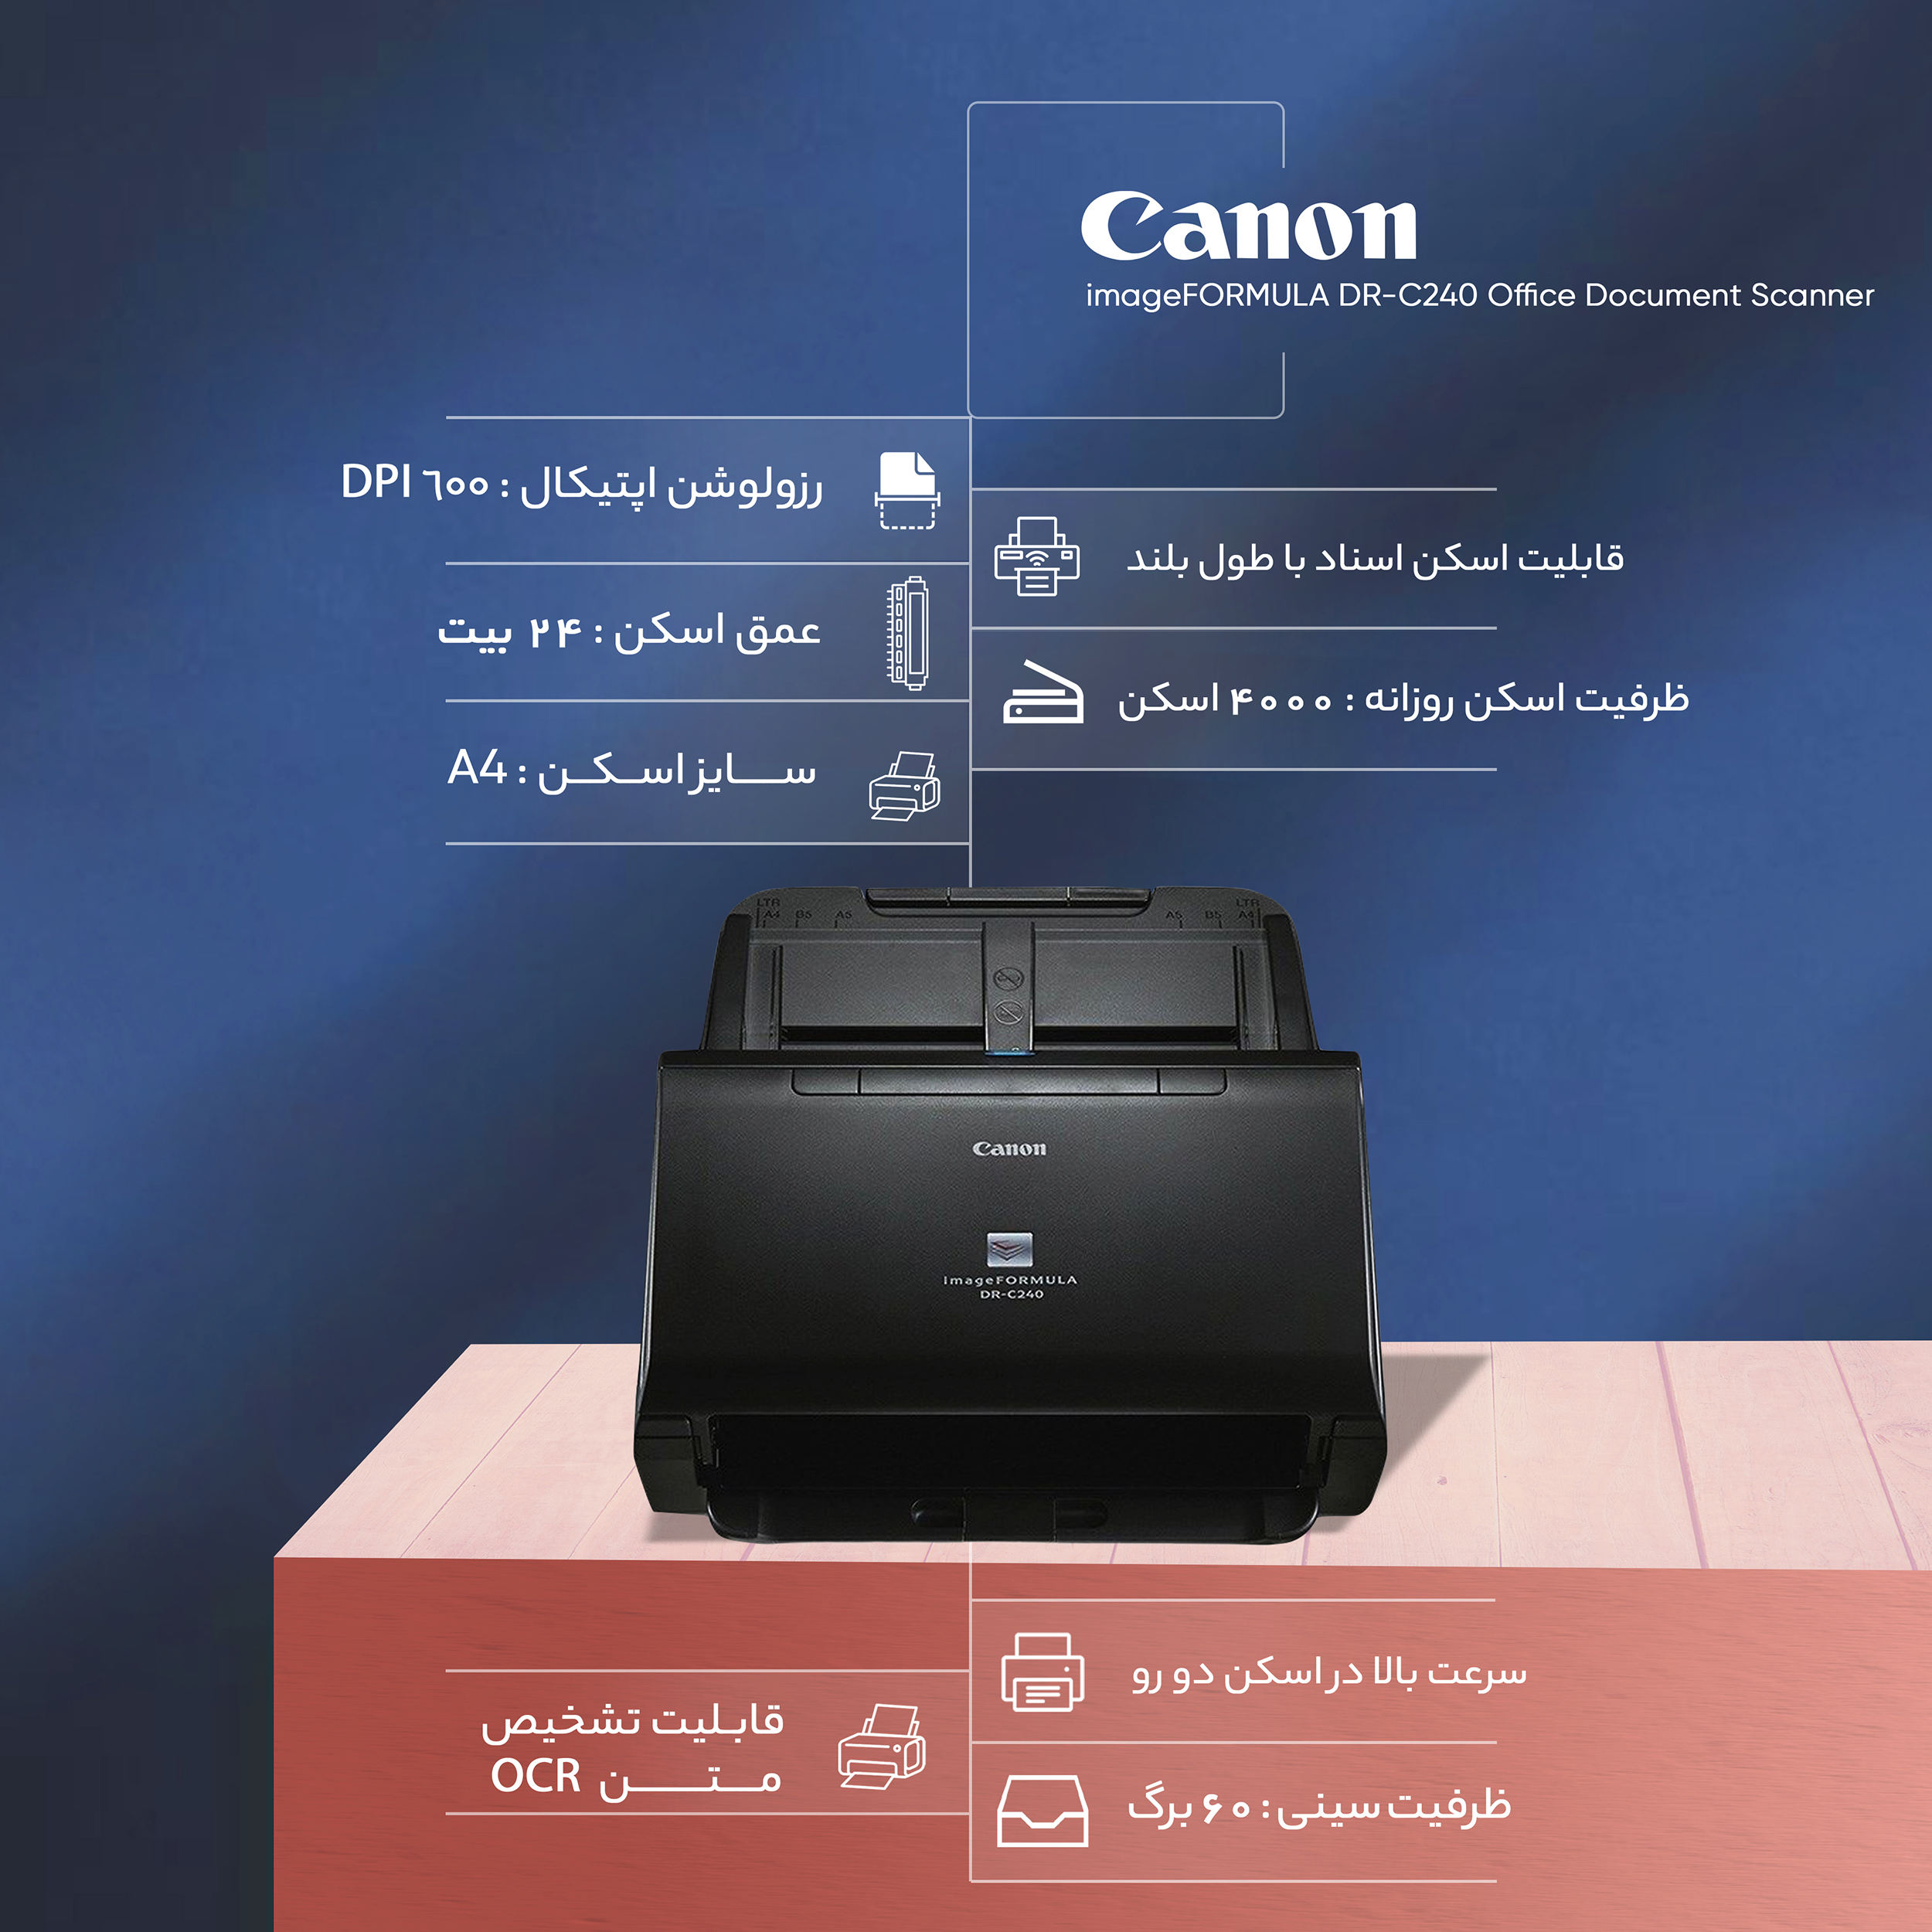 Canon ドキュメントスキャナー imageFORMULA DR-C230(両面読取 ADF60枚 A4カラー60面 分) - 2